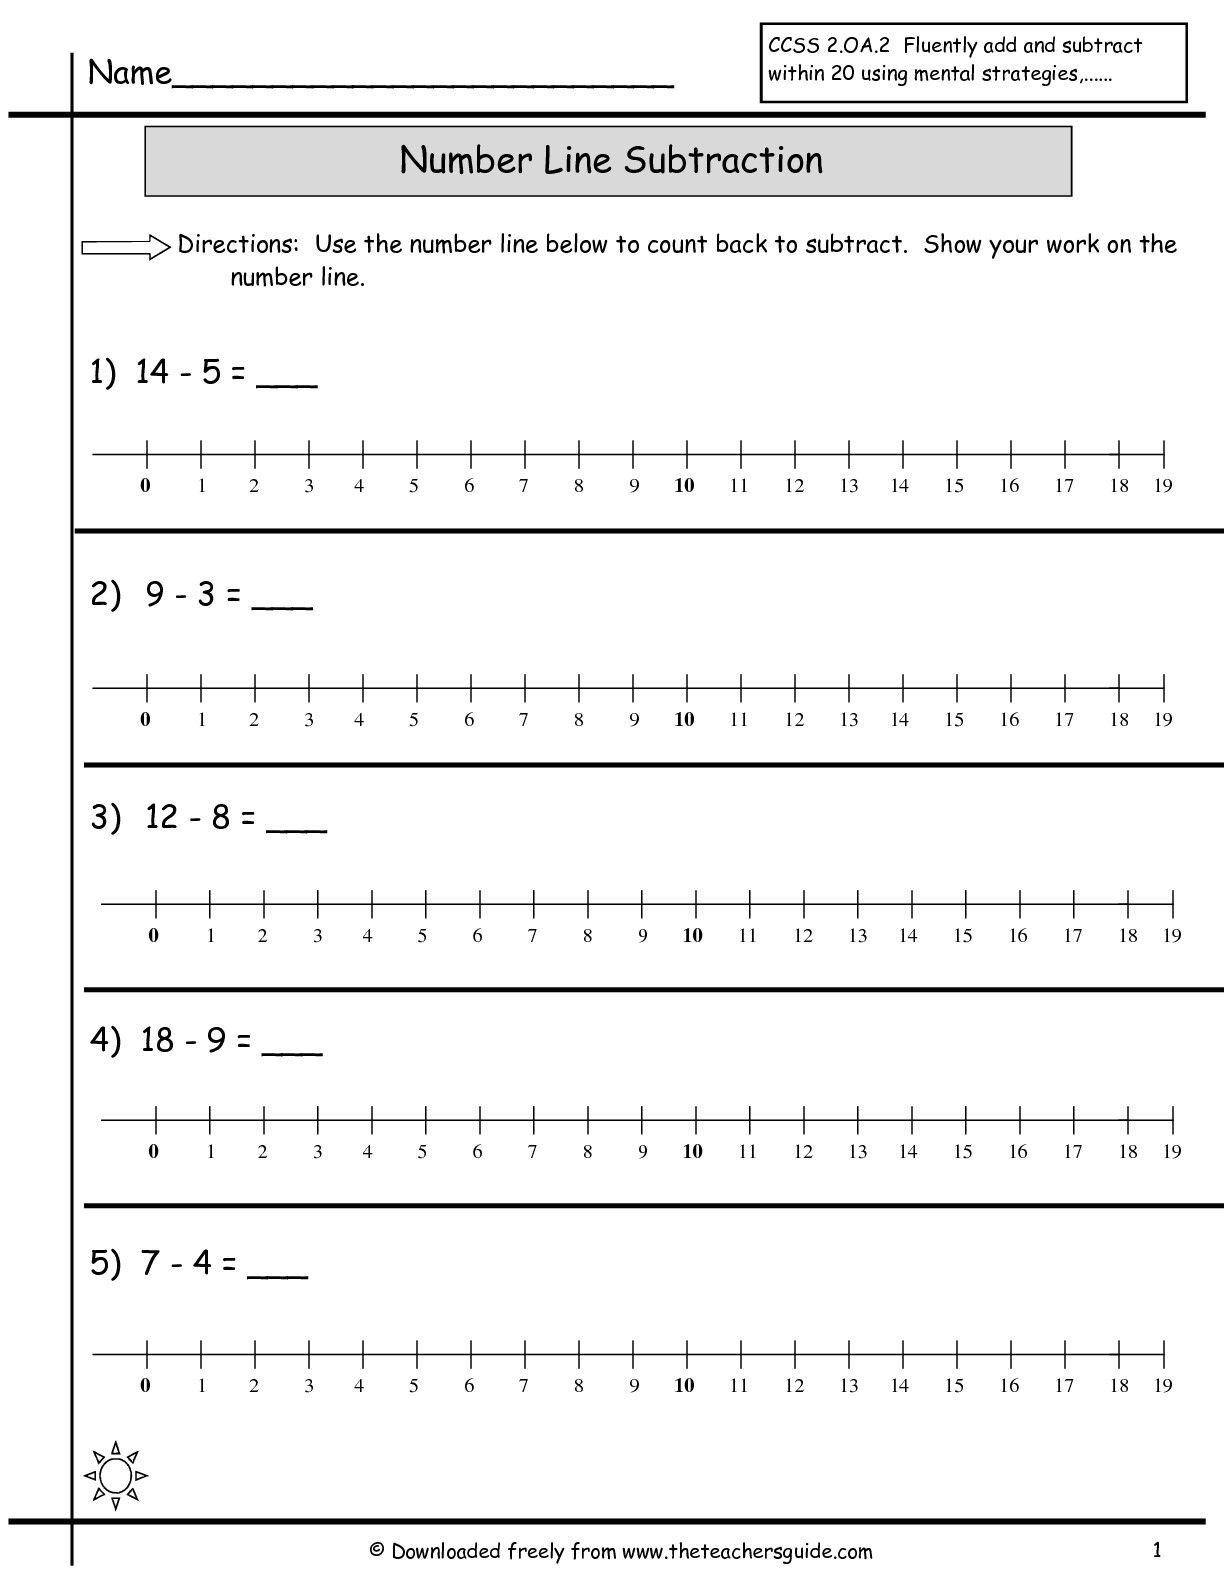 20 Second Grade Number Line Worksheets Desalas Template